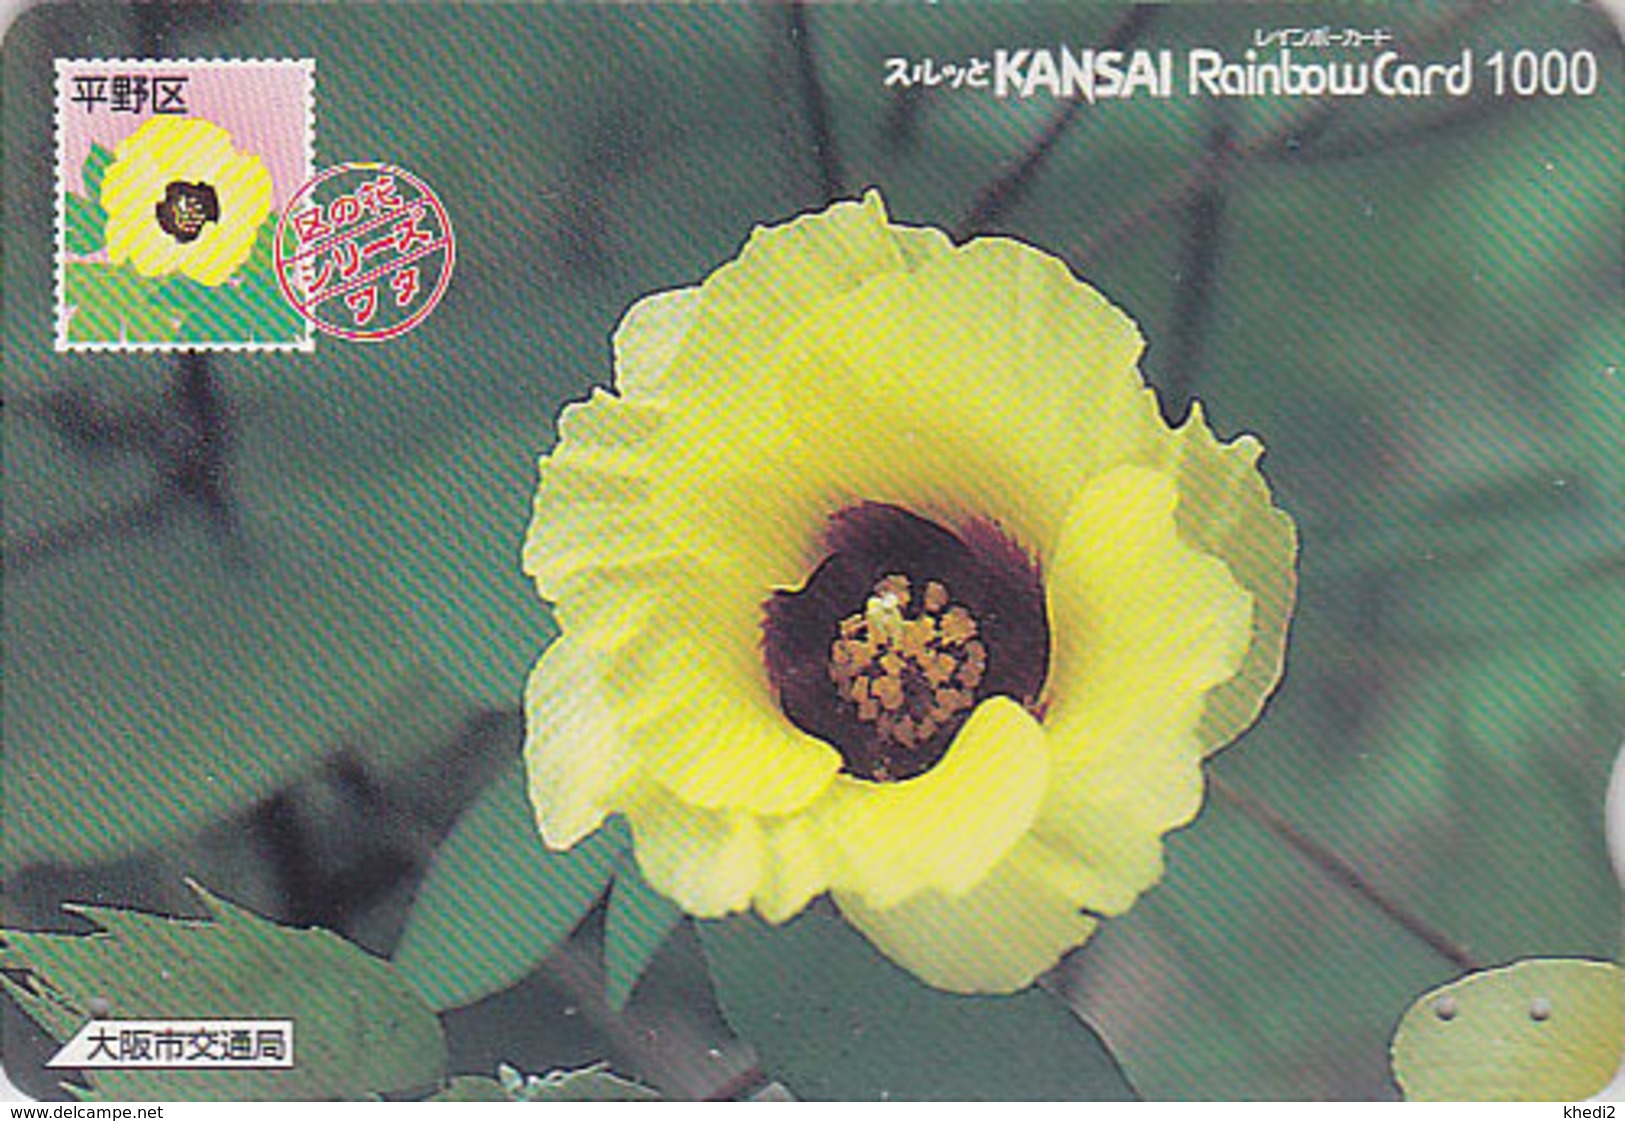 Carte Prépayée Japon - FLEUR - GOSSYPIUM Sur TIMBRE Série 04/16 - FLOWER On STAMP Japan Rainbow Card - 2458 - Stamps & Coins